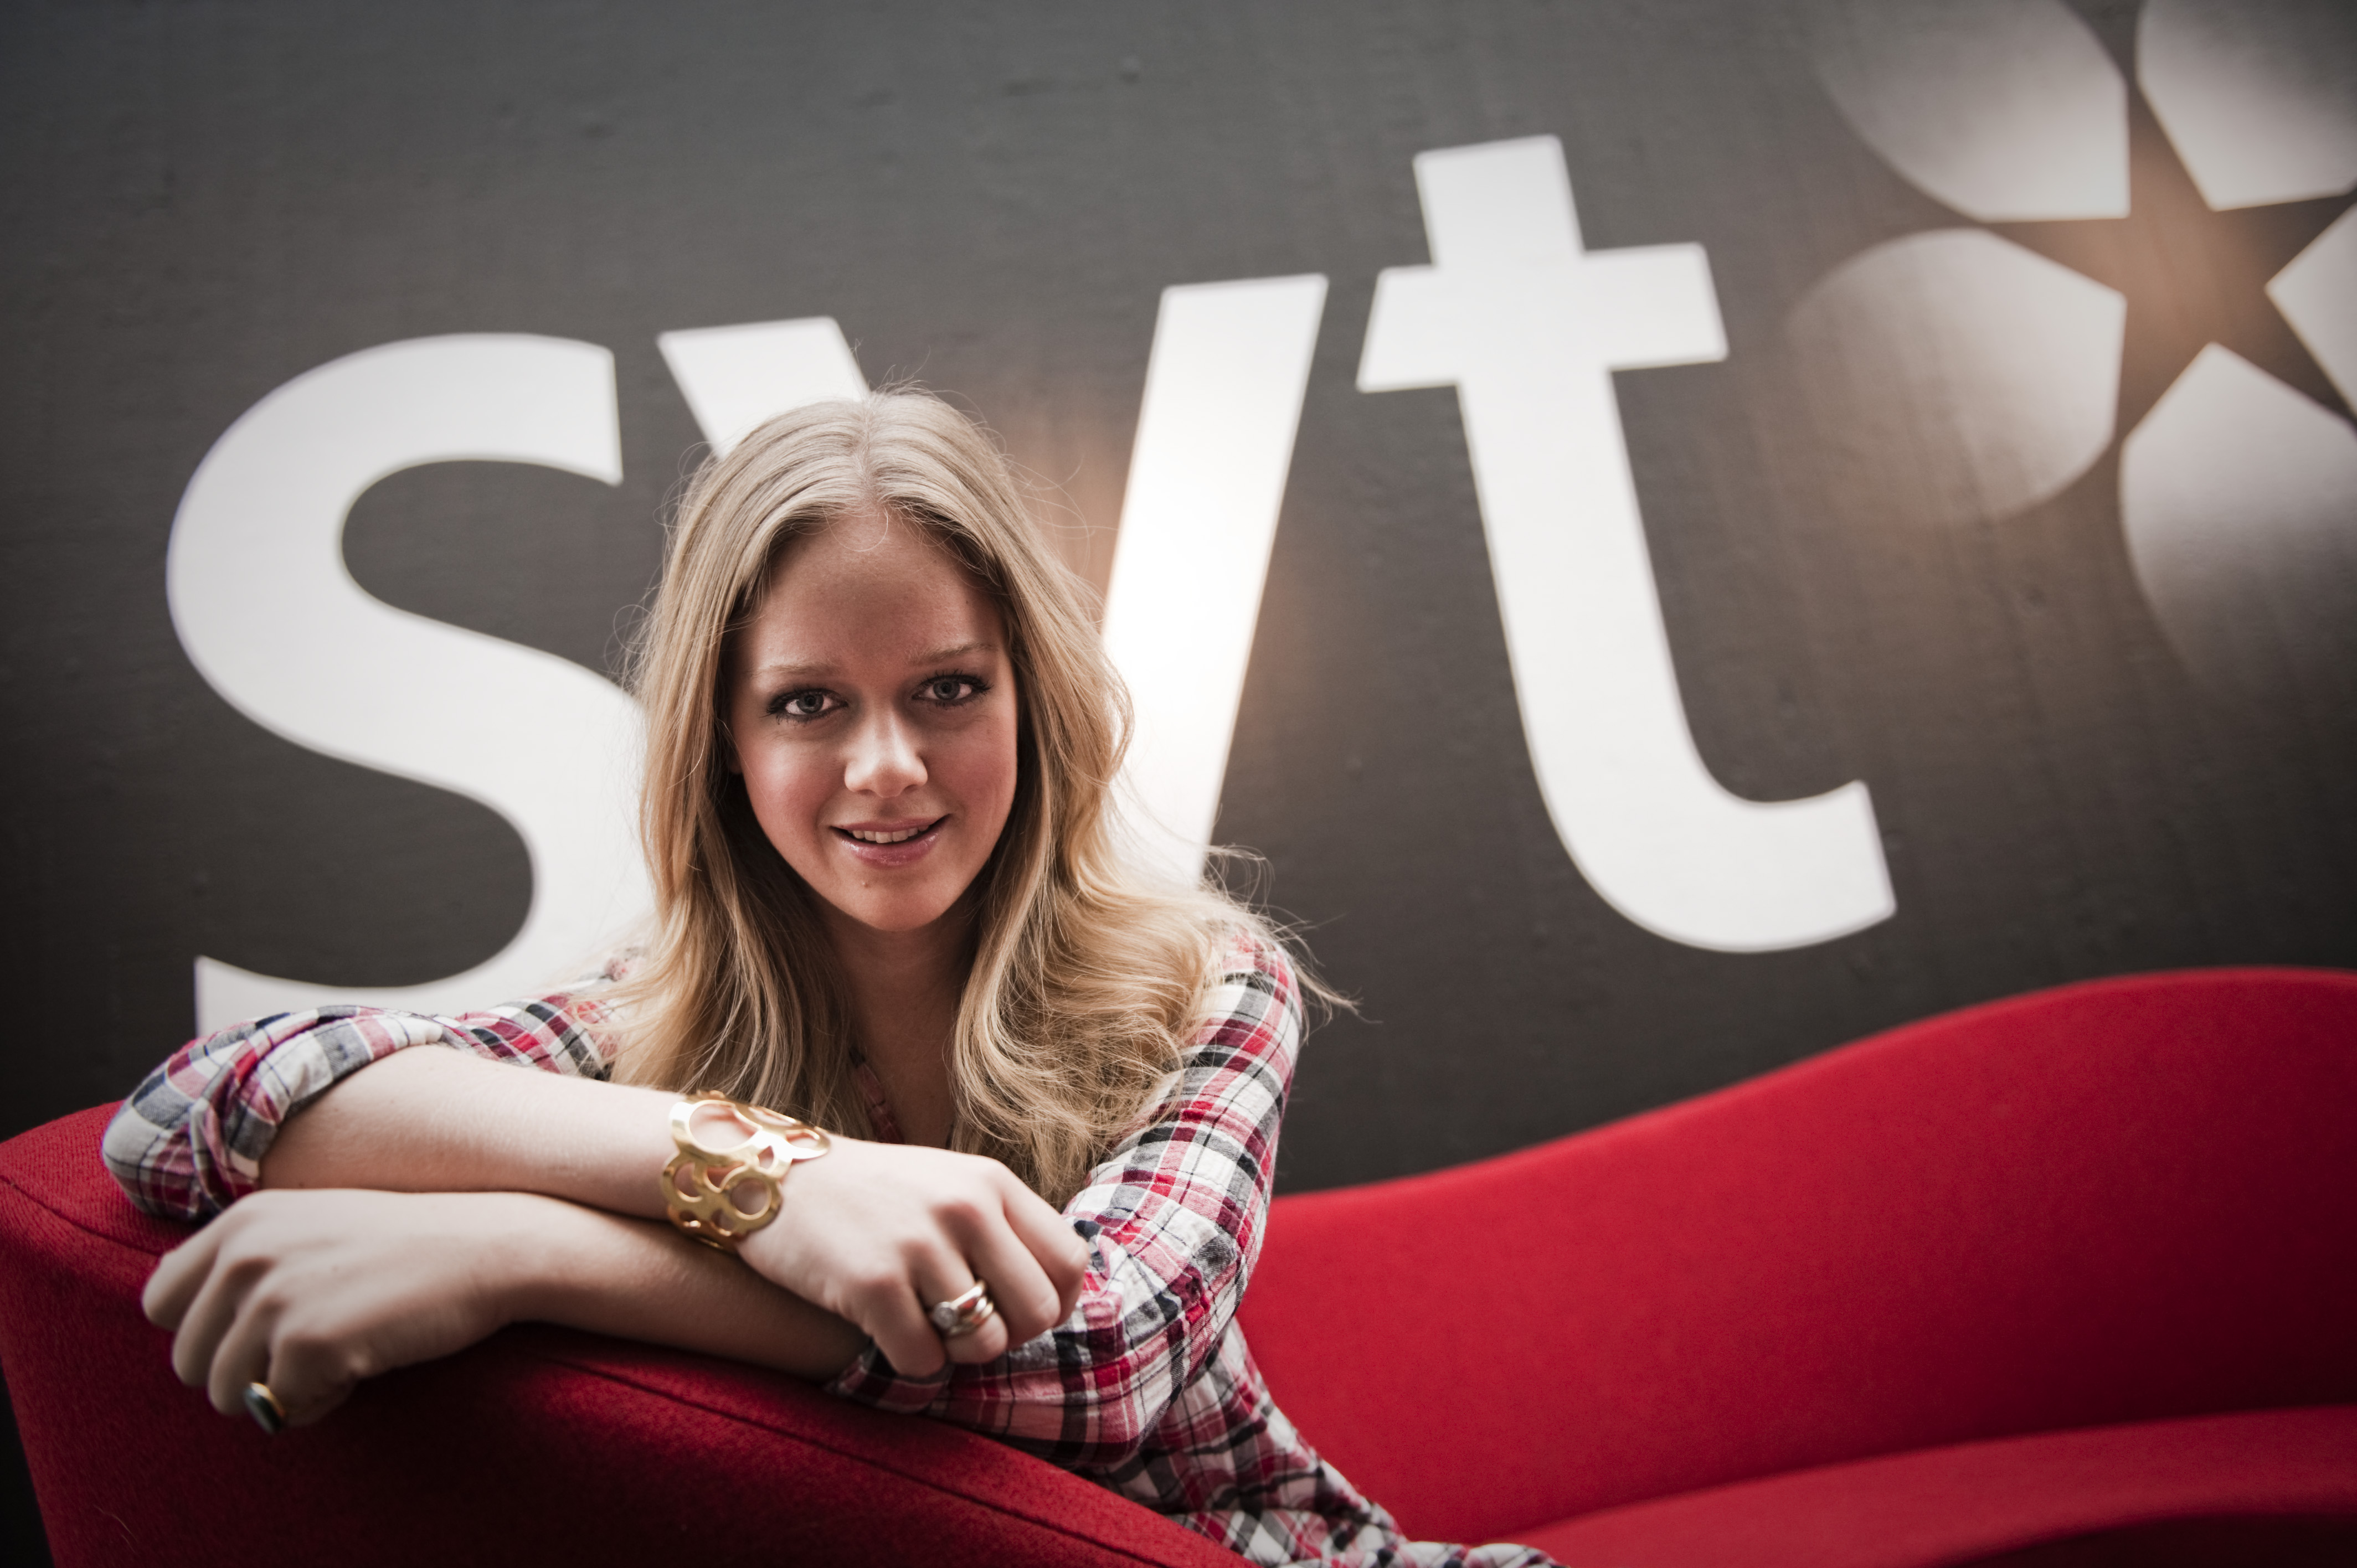 Ebba von Sydows klädbudget som programledare på SVT var på 120 000 kronor enligt tidningen Fokus.